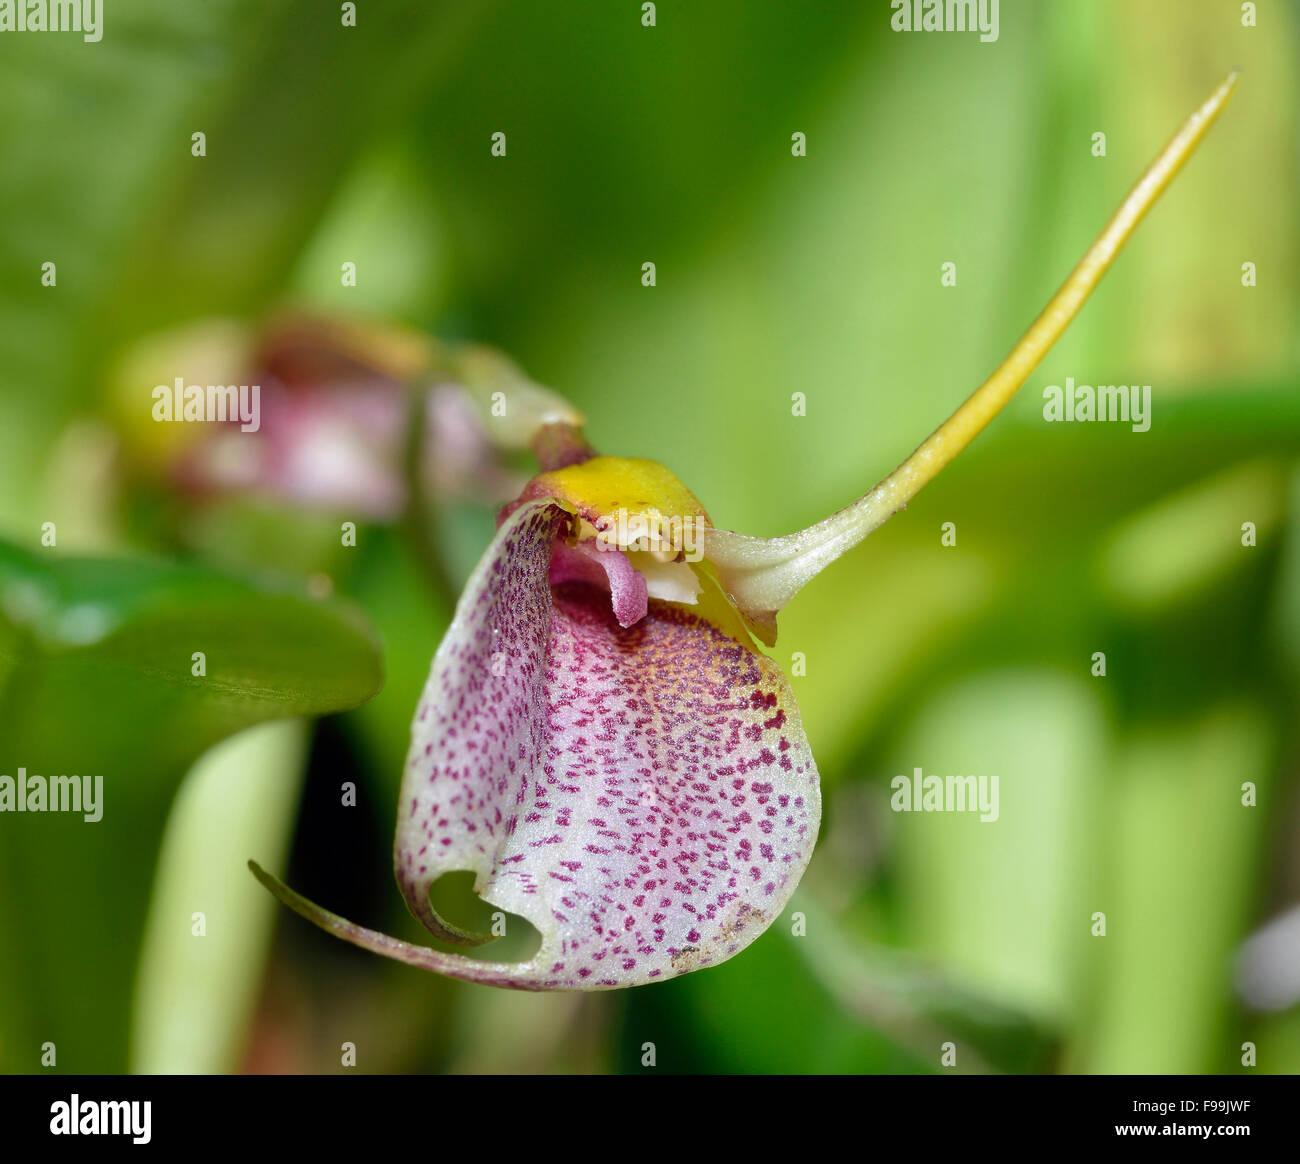 Wagener's Masdevallia Orchid - Maxillaria wagneriana From Venezuela & Colombia Stock Photo